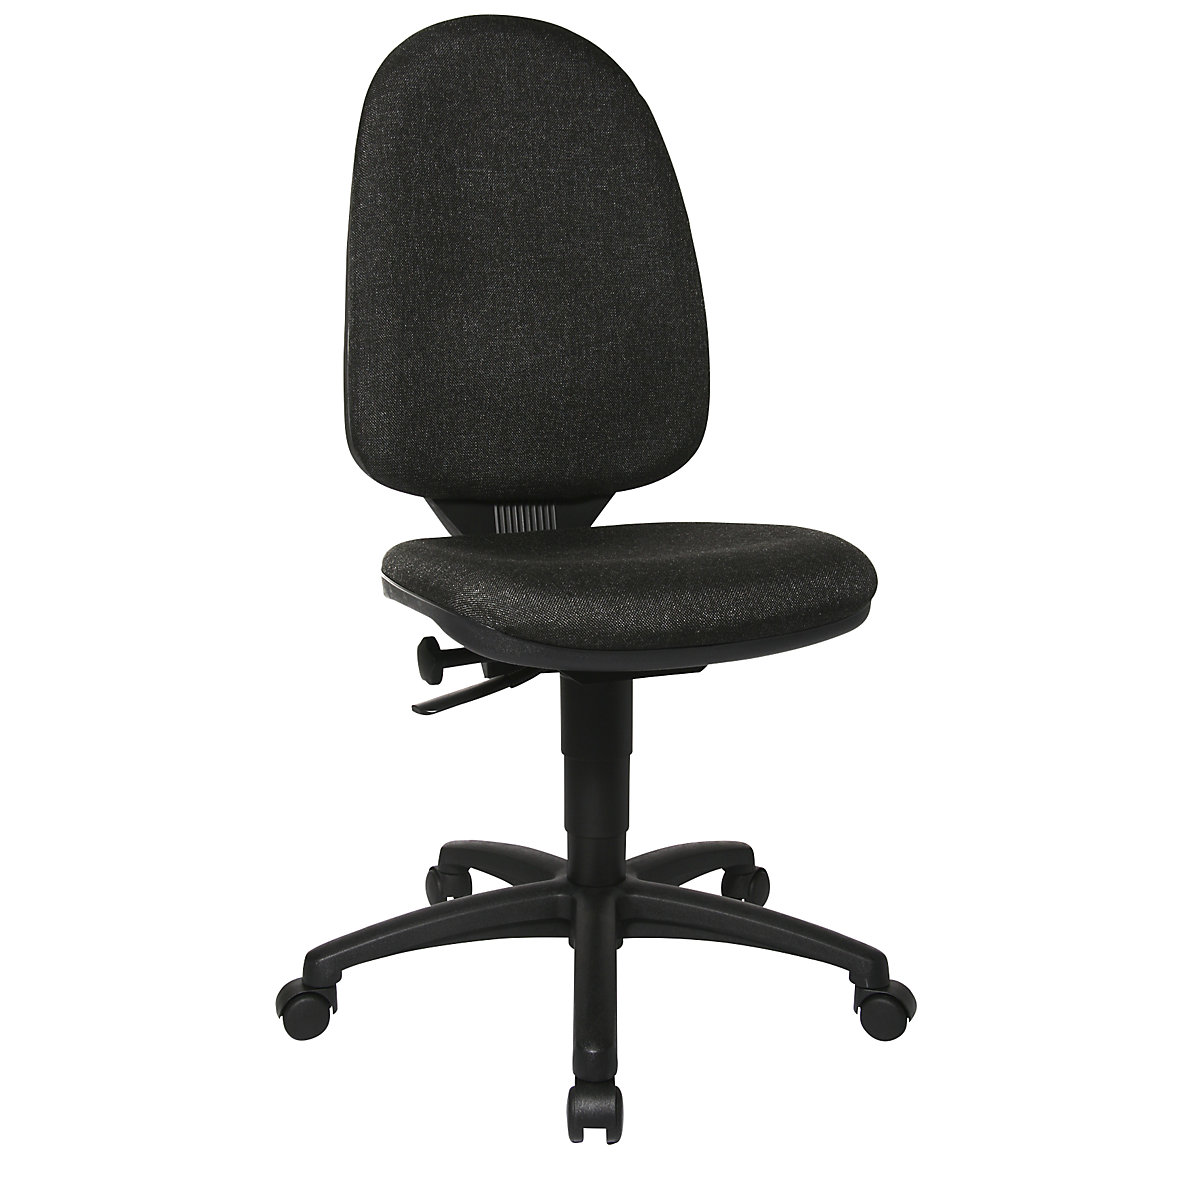 Standardna okretna stolica – Topstar, bez naslona za ruke, naslon za leđa 550 mm, postolje u crnoj, tkanina u antracit boji, od 2 komada-3